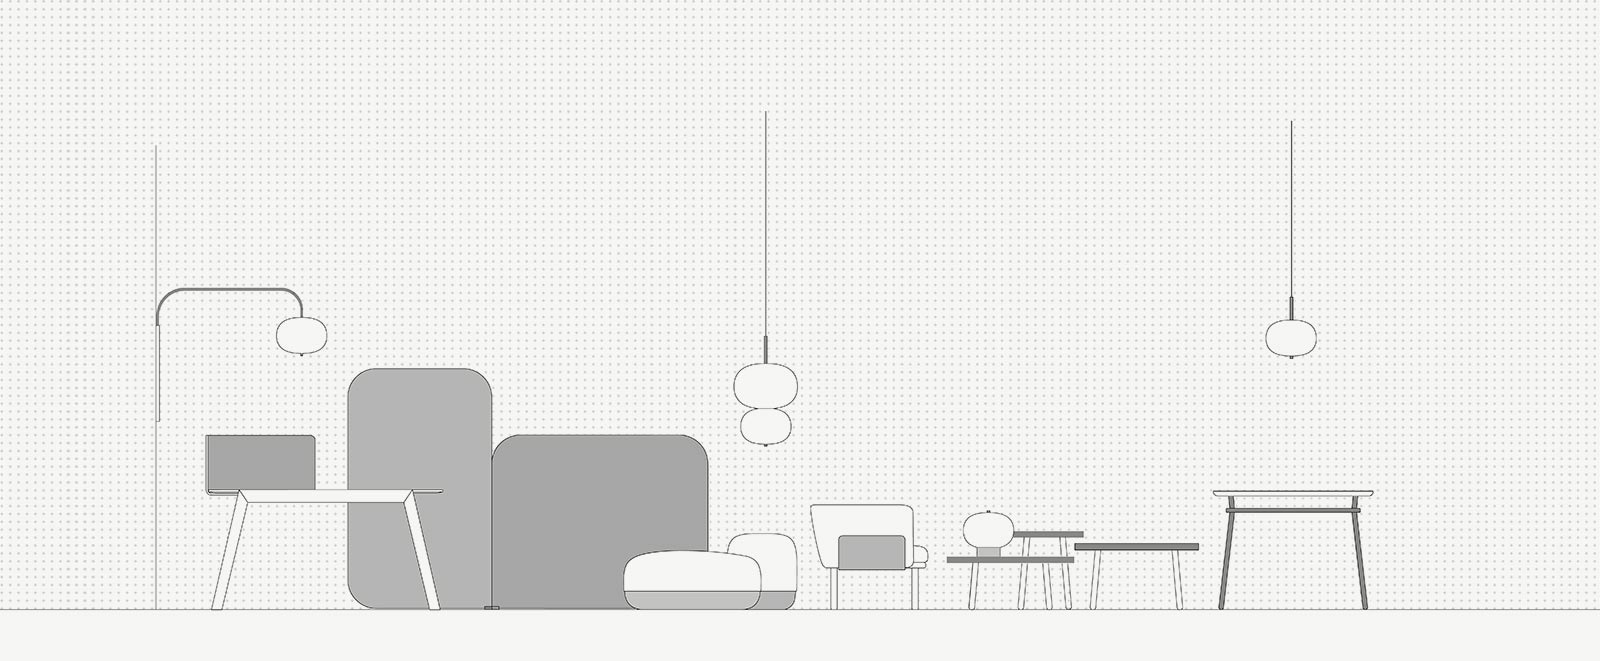 Iratzoki-Lizaso-Furniture-Design-Studio